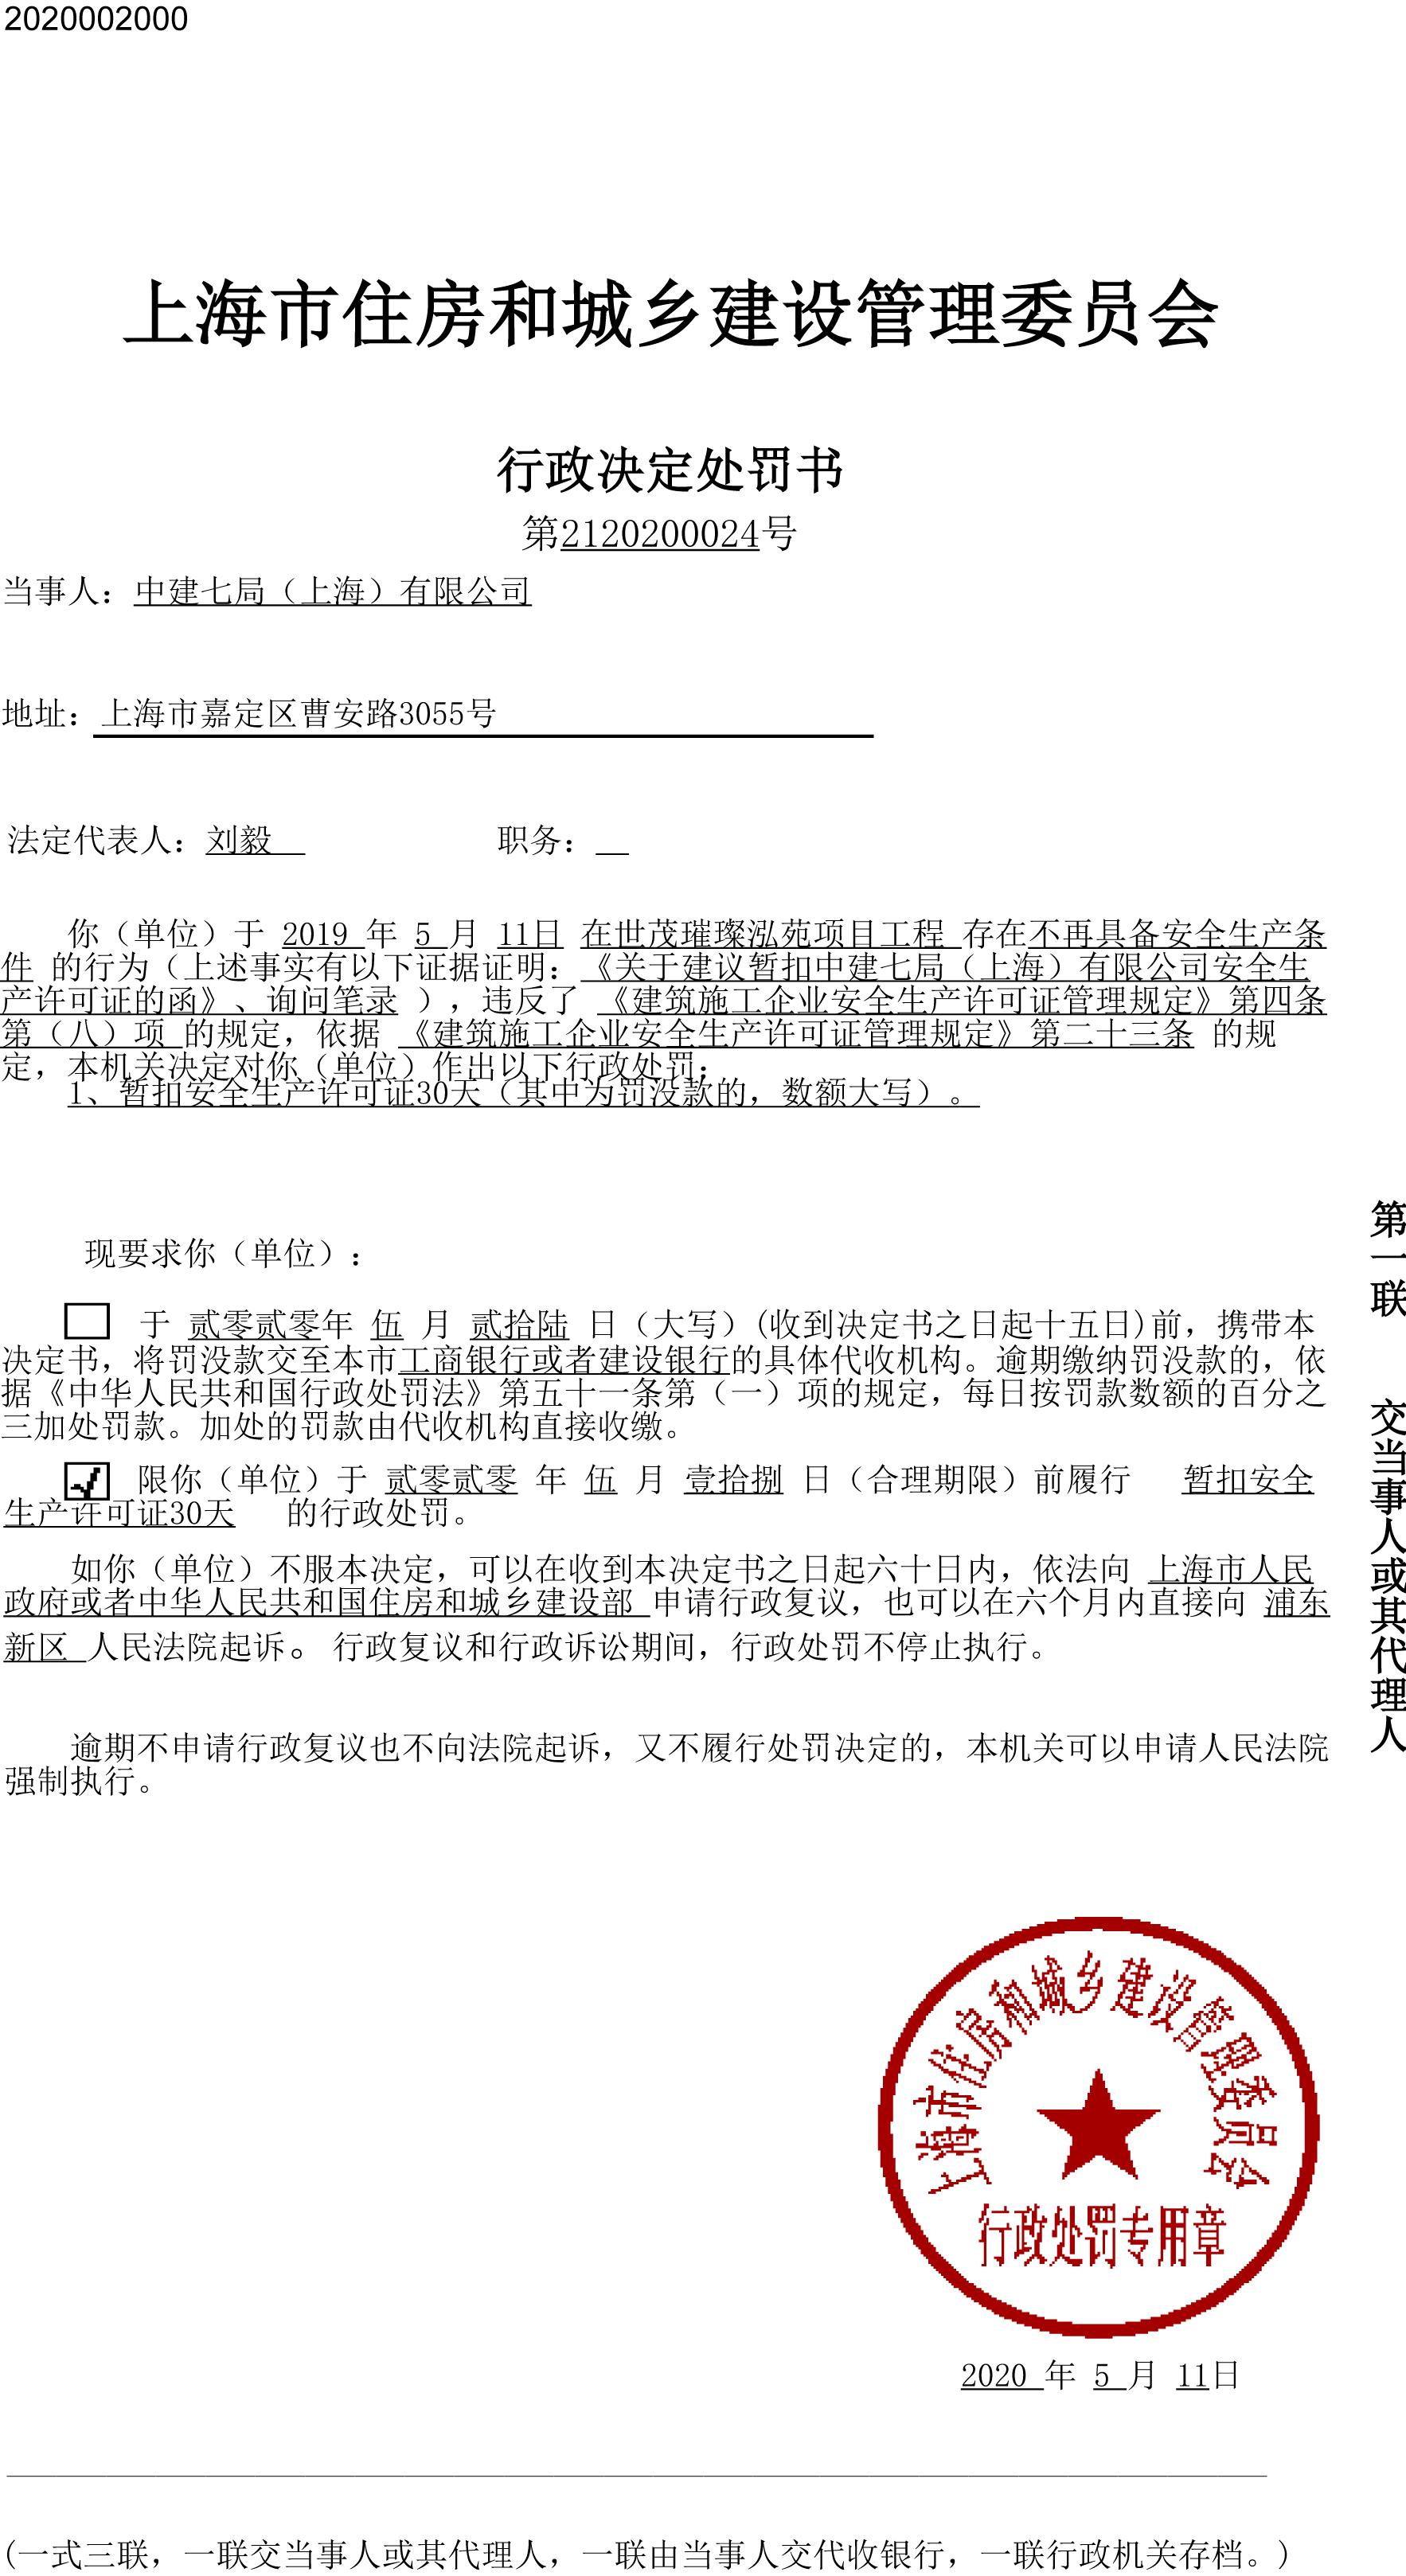 中建七局(上海)有限公司世茂璀璨泓苑项目违规被暂扣安全生产许可证